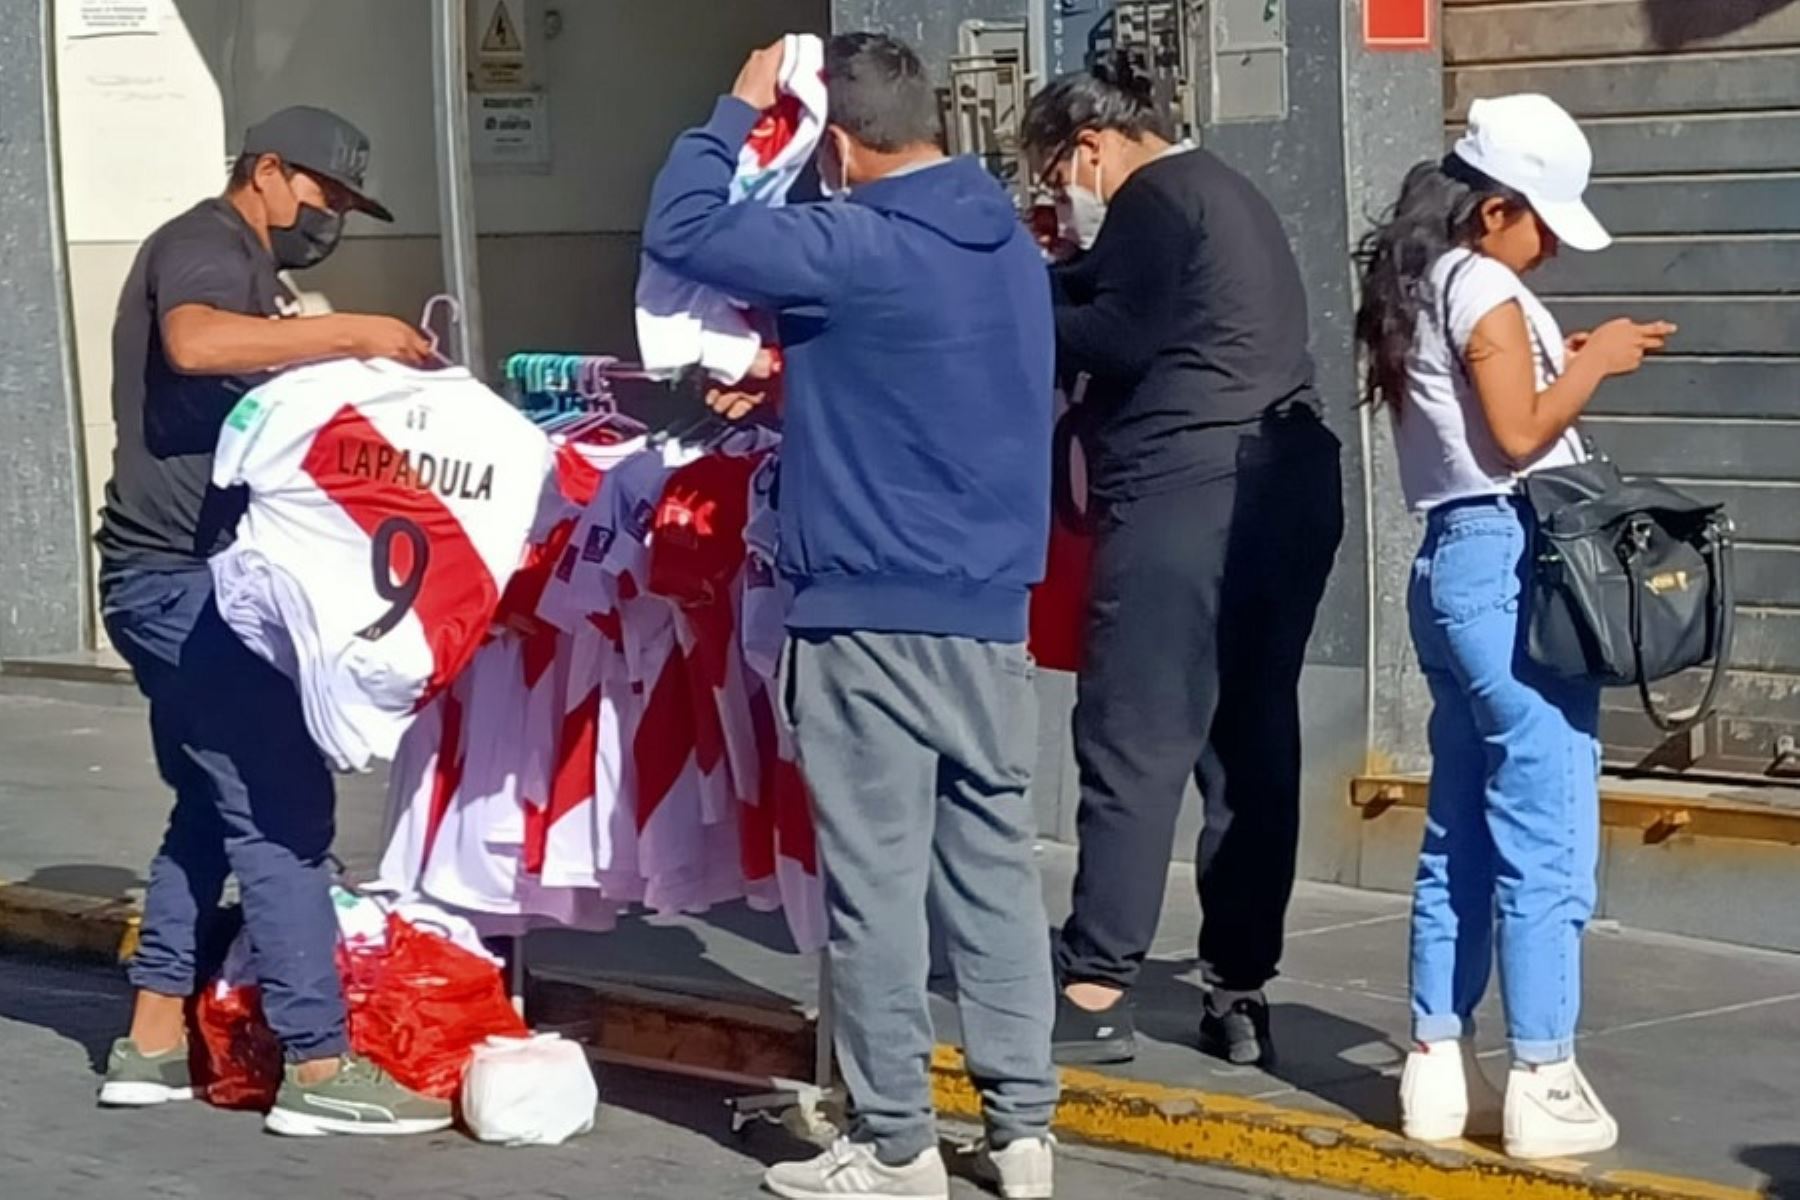 A dos días del encuentro decisivo entre Perú y Australia, por la penúltima plaza al Mundial de Catar 2022, la venta de camisetas de la selección nacional se intensificó en la ciudad de Arequipa, siendo las más vendidas aquellas que llevan en la espalda los apellidos Lapadula y Cueva, los jugadores más apreciados por la hinchada.